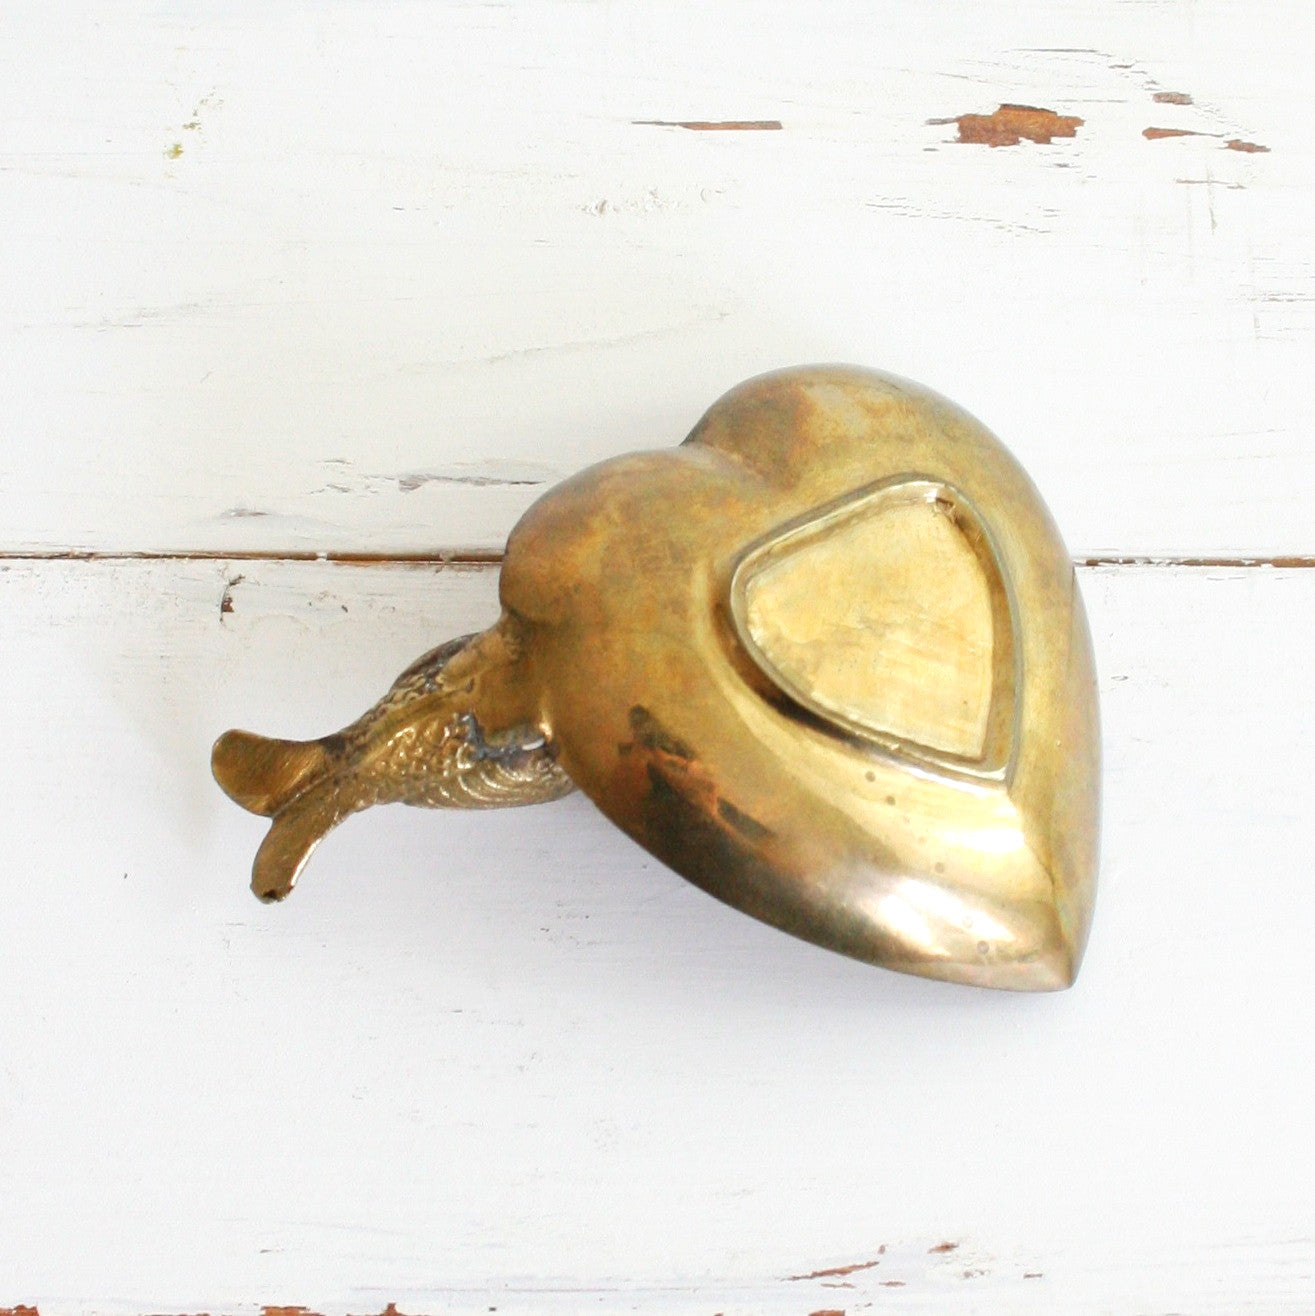 SOLD - Vintage Golden Brass Bird and Heart Trinket Dish / Mid Century Brass Dish